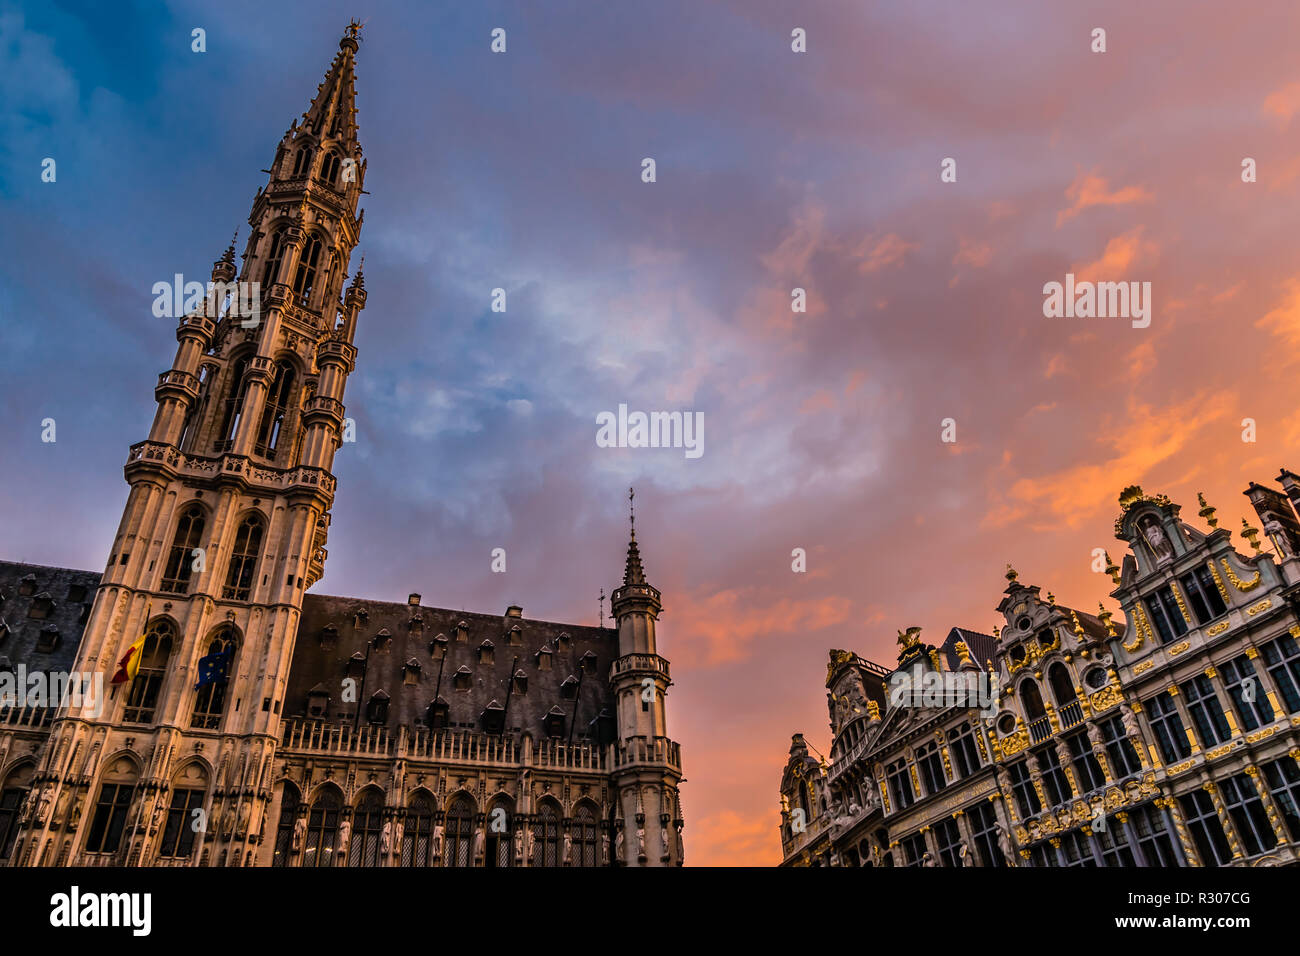 De soleil colorés sur la Grande Place, l'ancienne place du marché central à Bruxelles, Belgique. Banque D'Images